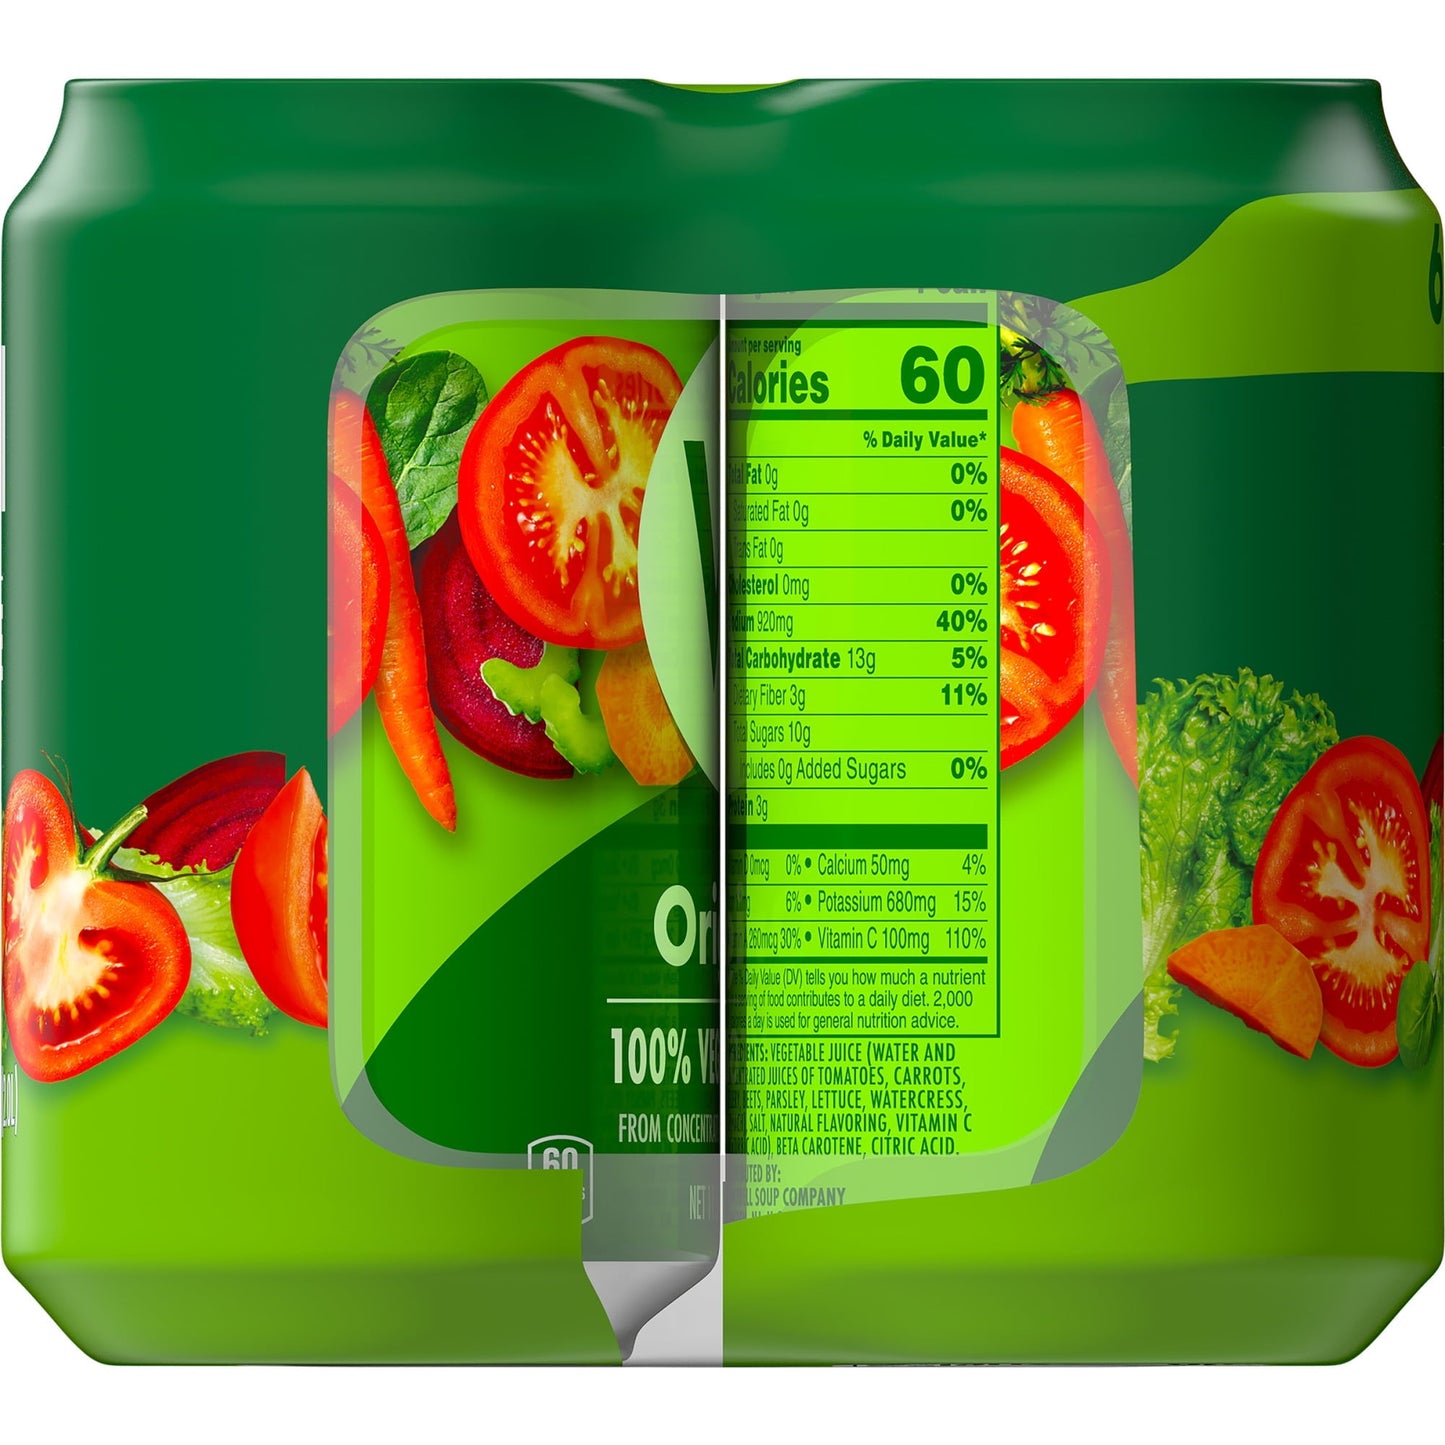 V8 Original 100% Vegetable Juice, 11.5 fl oz Can (Pack of 6)